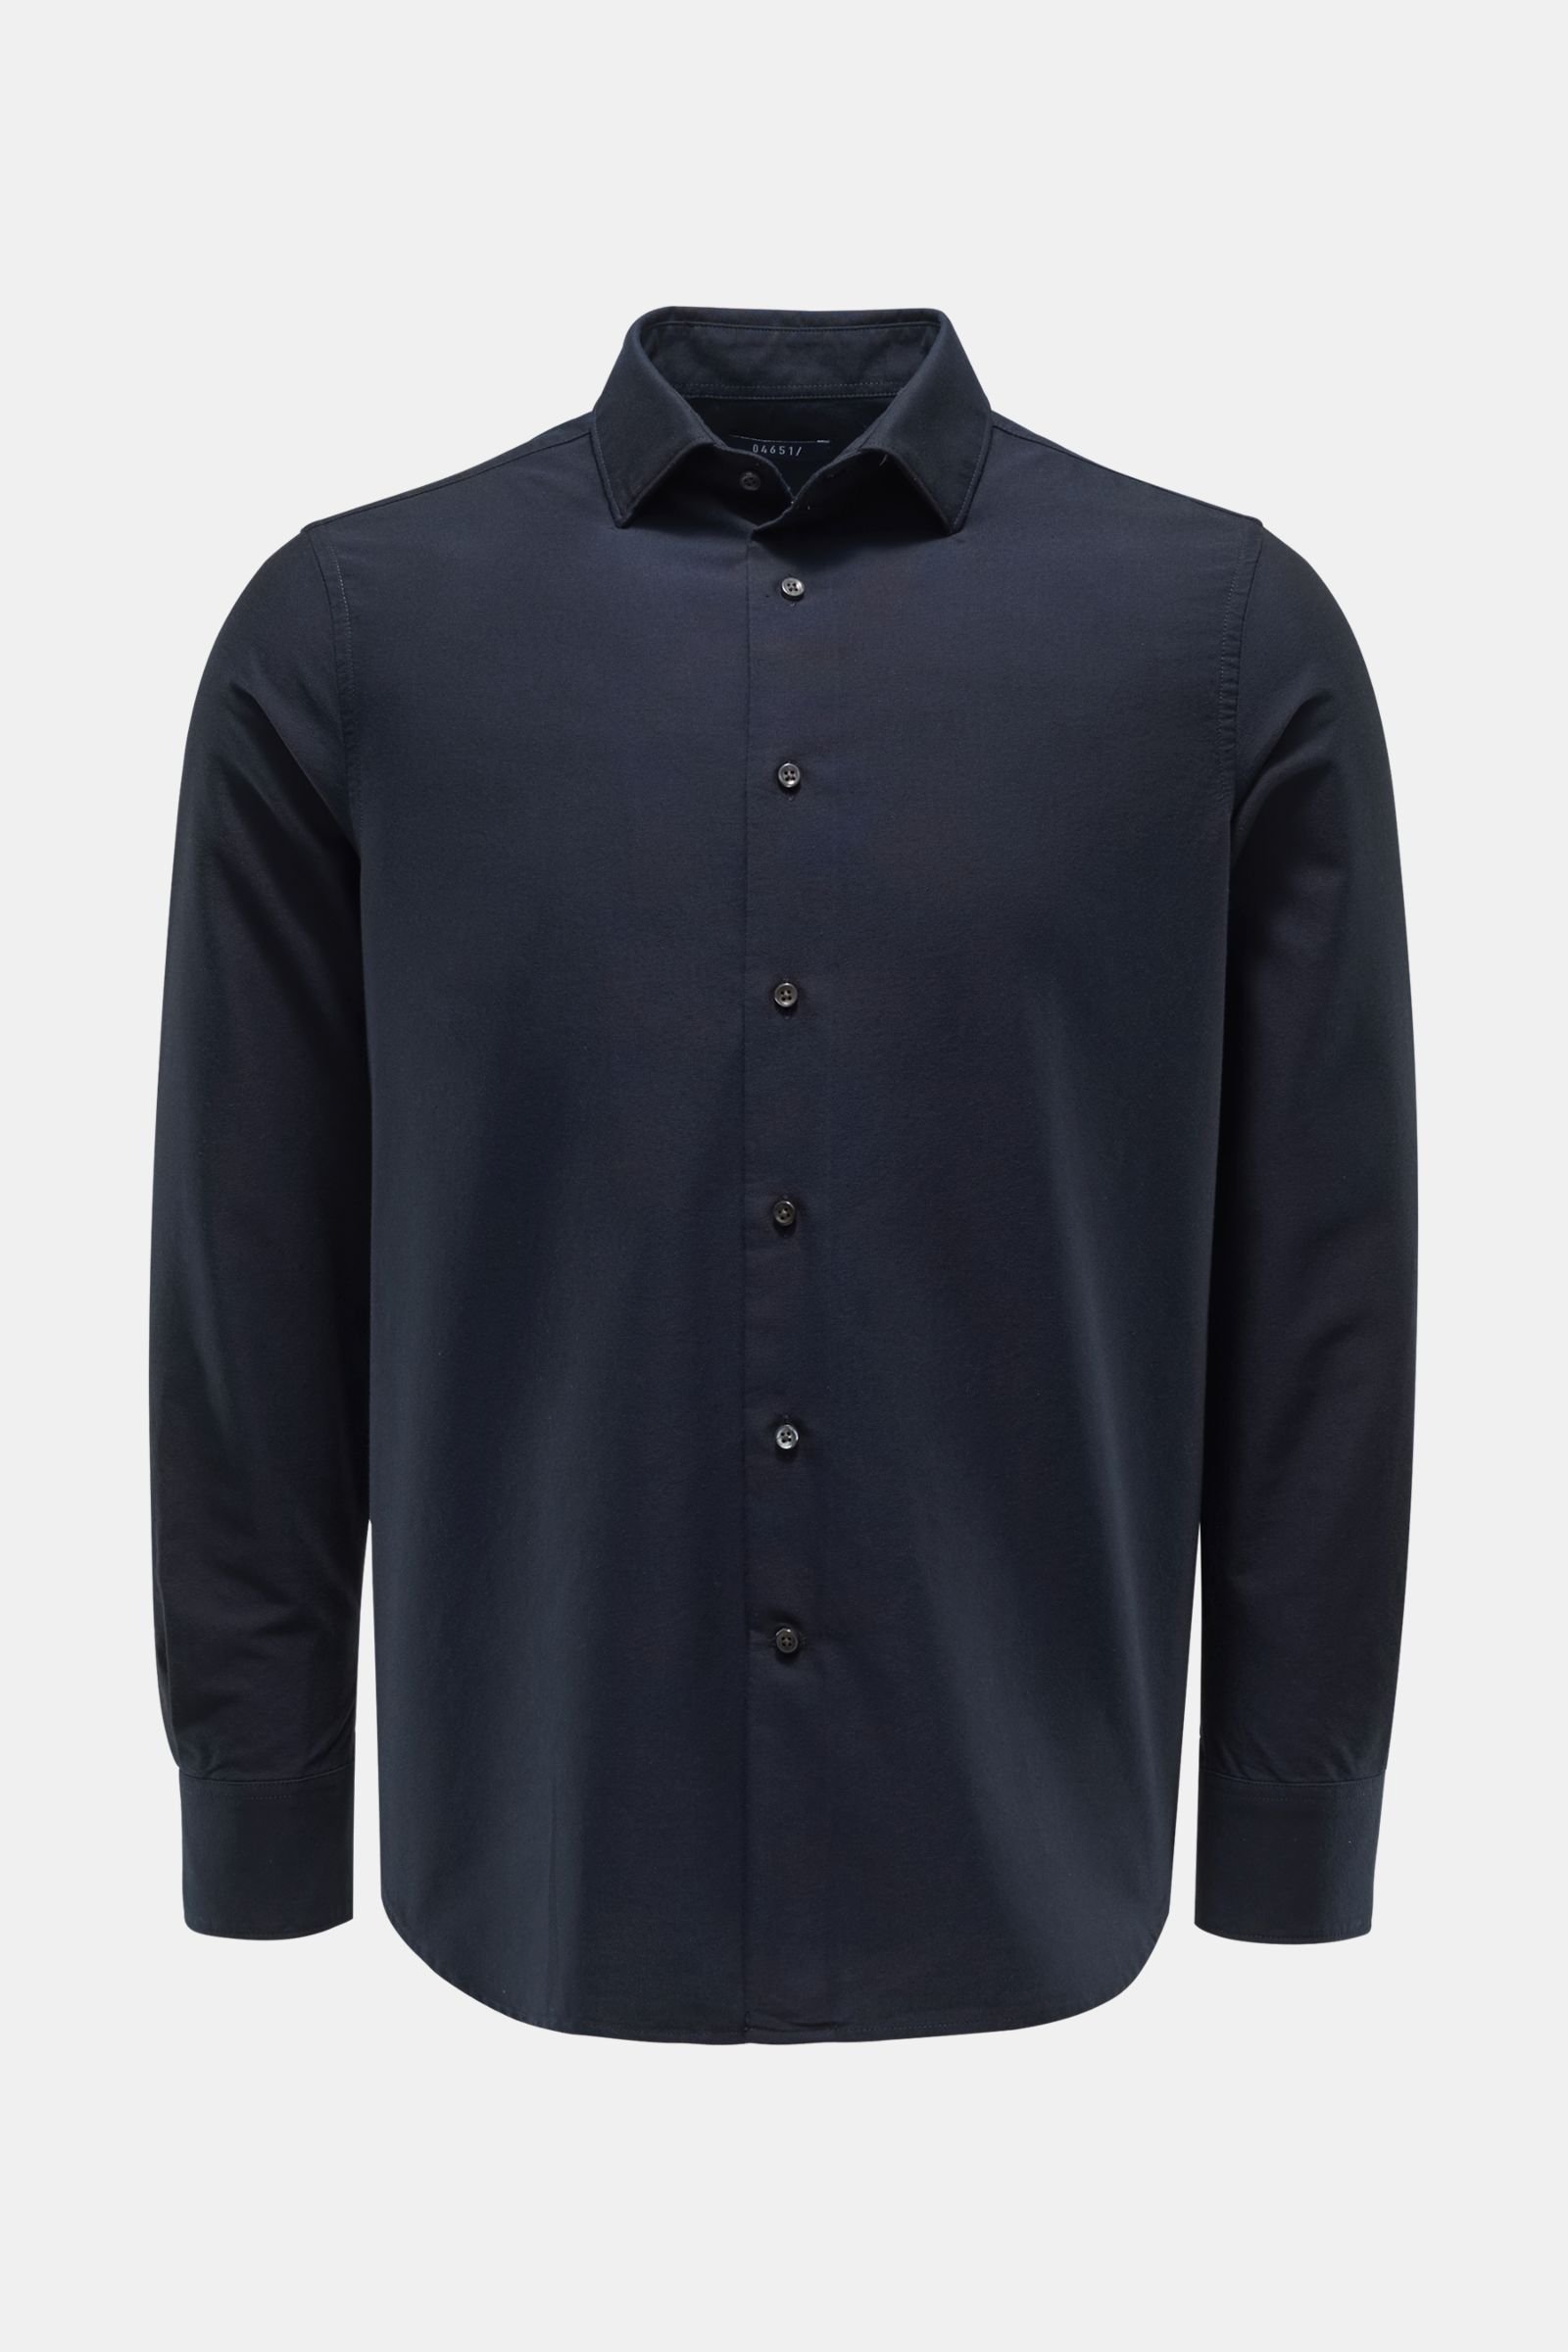 Oxford shirt Kent collar navy